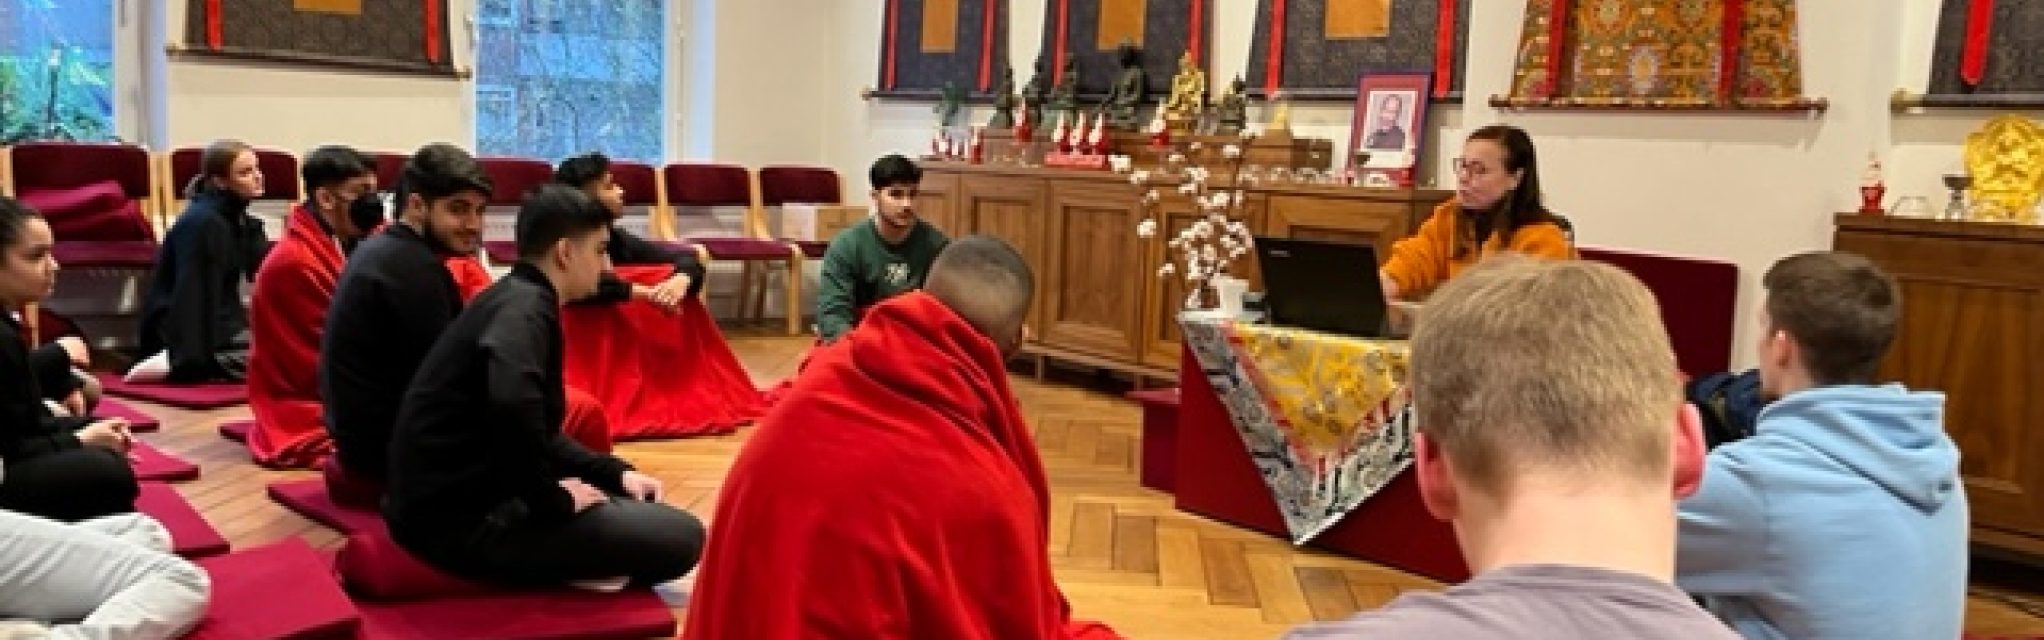 News-Bild: Der Religionskurs aus dem S4 besucht das tibetische Zentrum